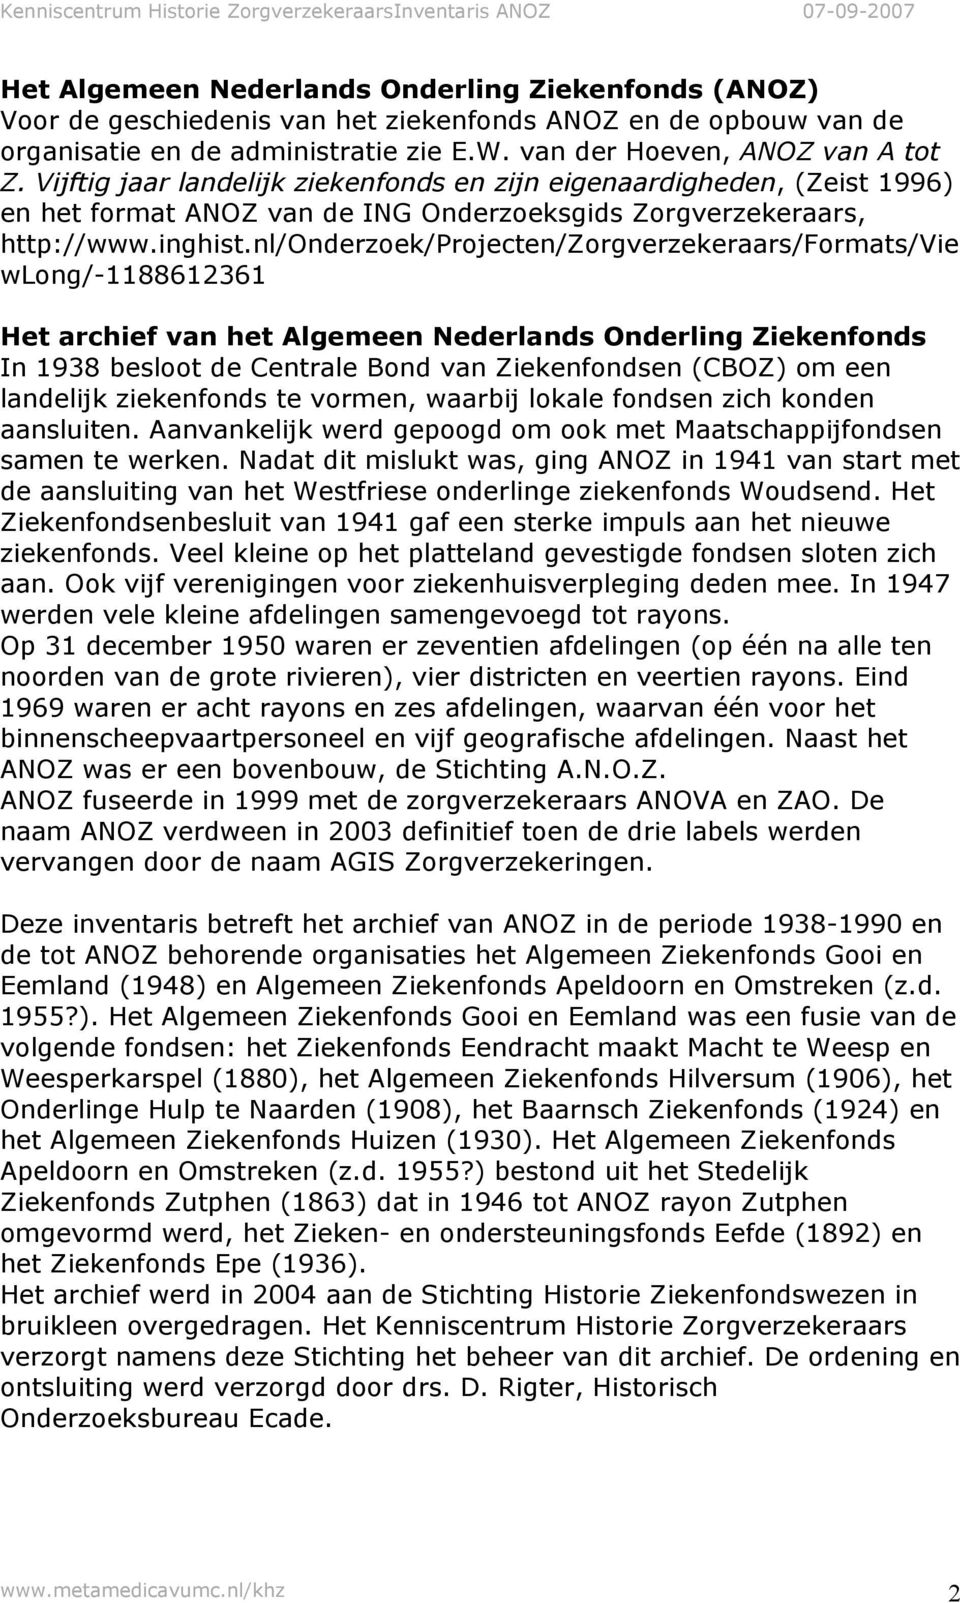 nl/onderzoek/projecten/zorgverzekeraars/formats/vie wlong/-1188612361 Het archief van het Algemeen Nederlands Onderling Ziekenfonds In 1938 besloot de Centrale Bond van Ziekenfondsen (CBOZ) om een